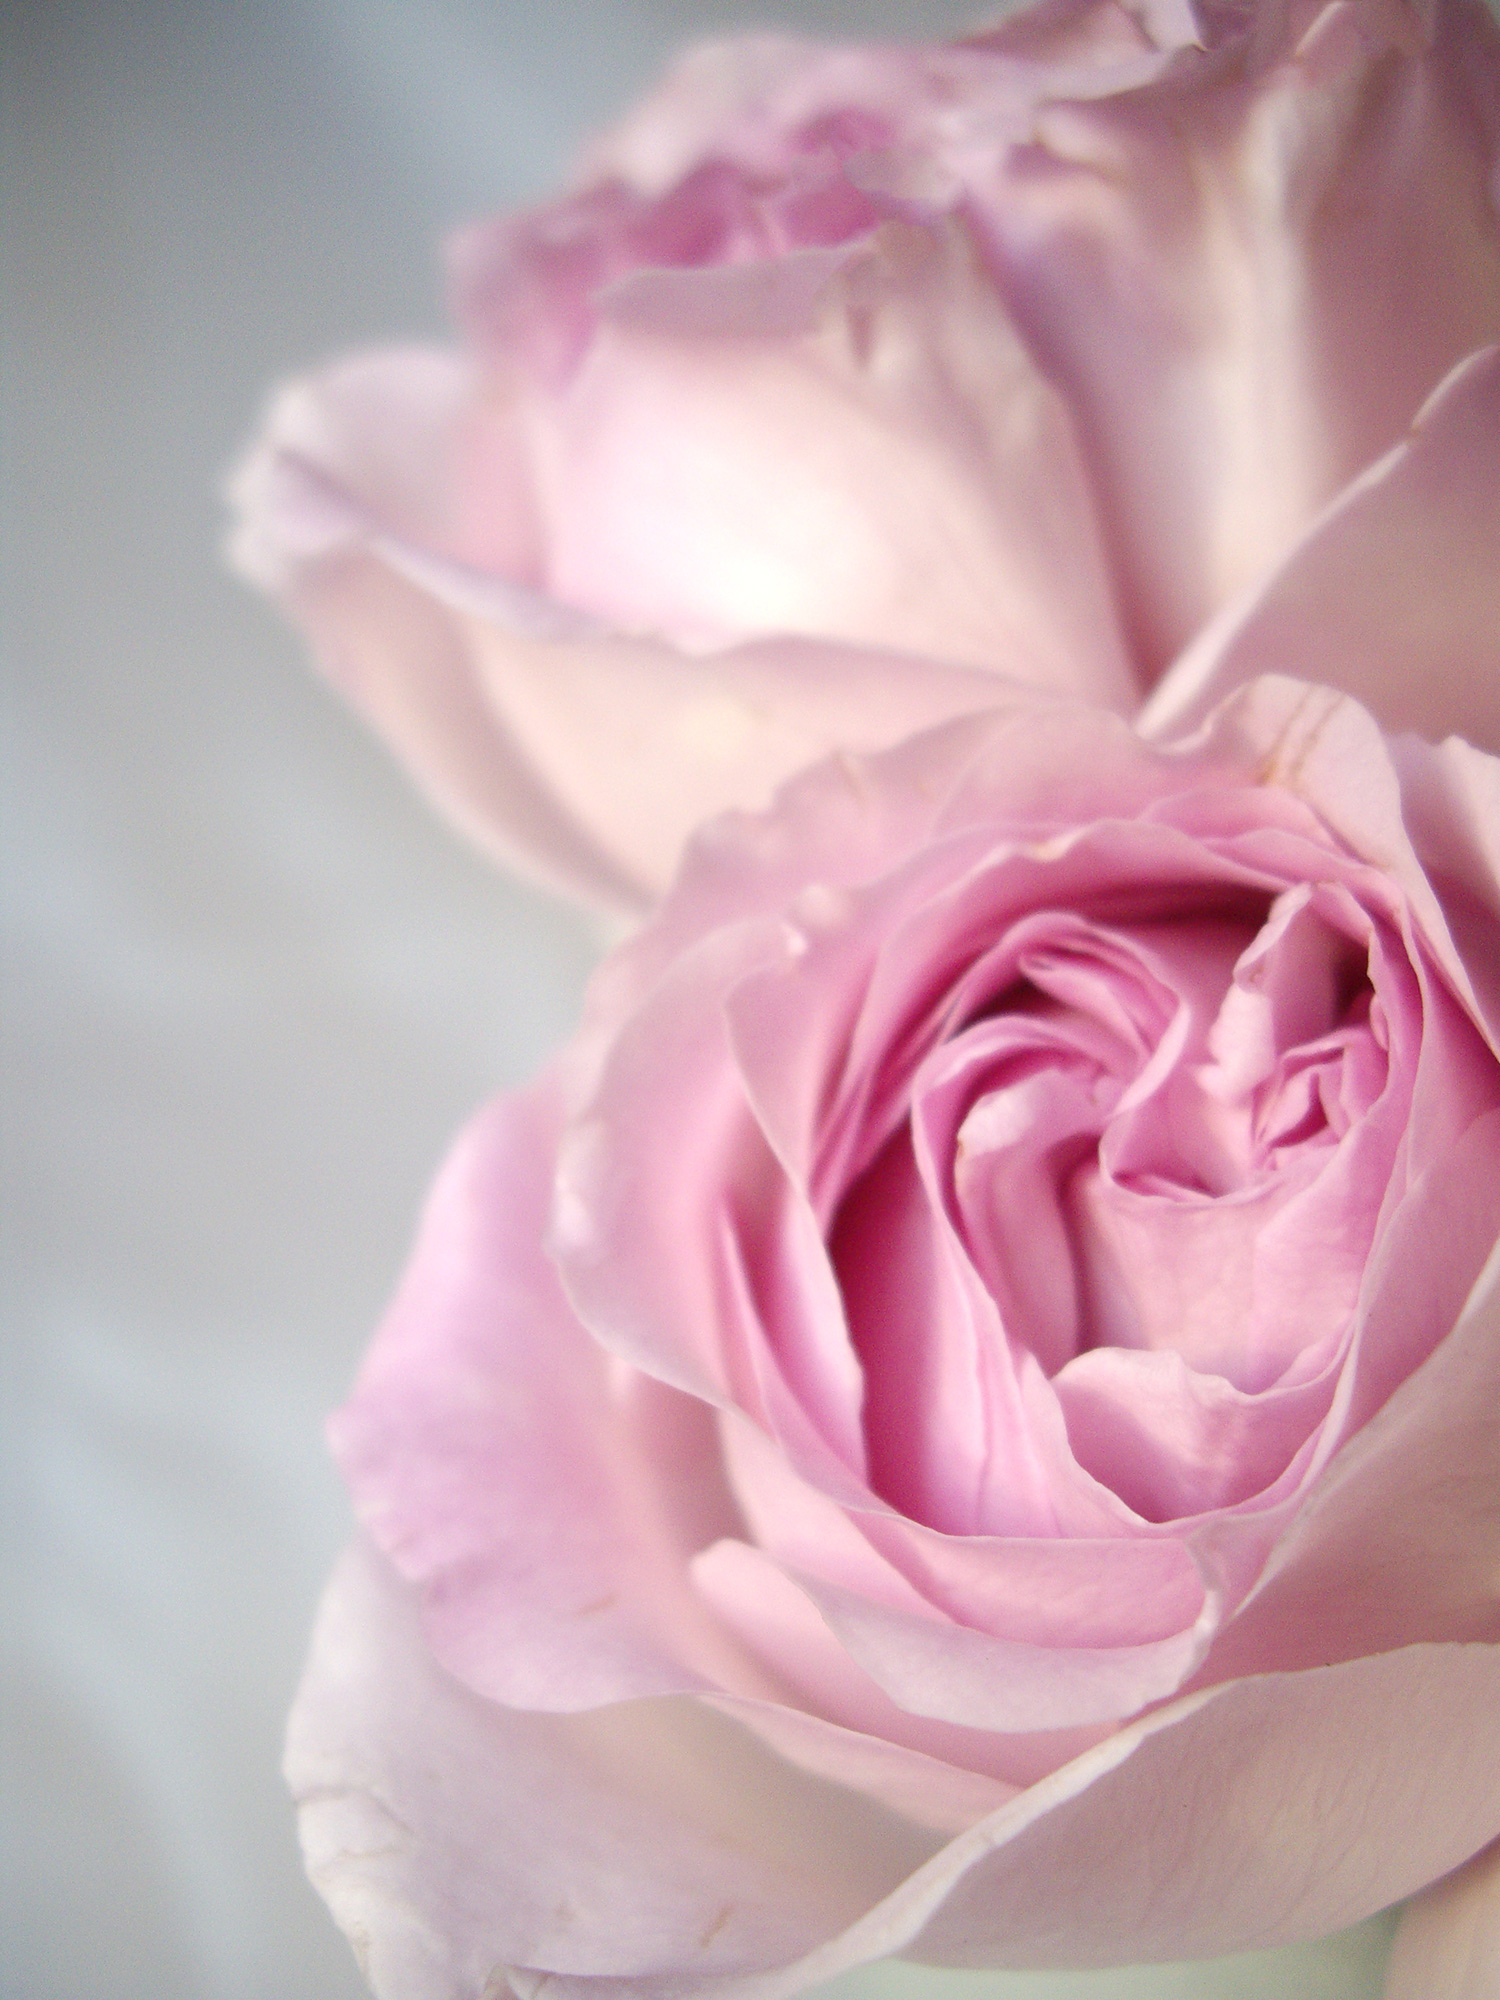 薄くて淡い色の薔薇の花のフリー写真素材